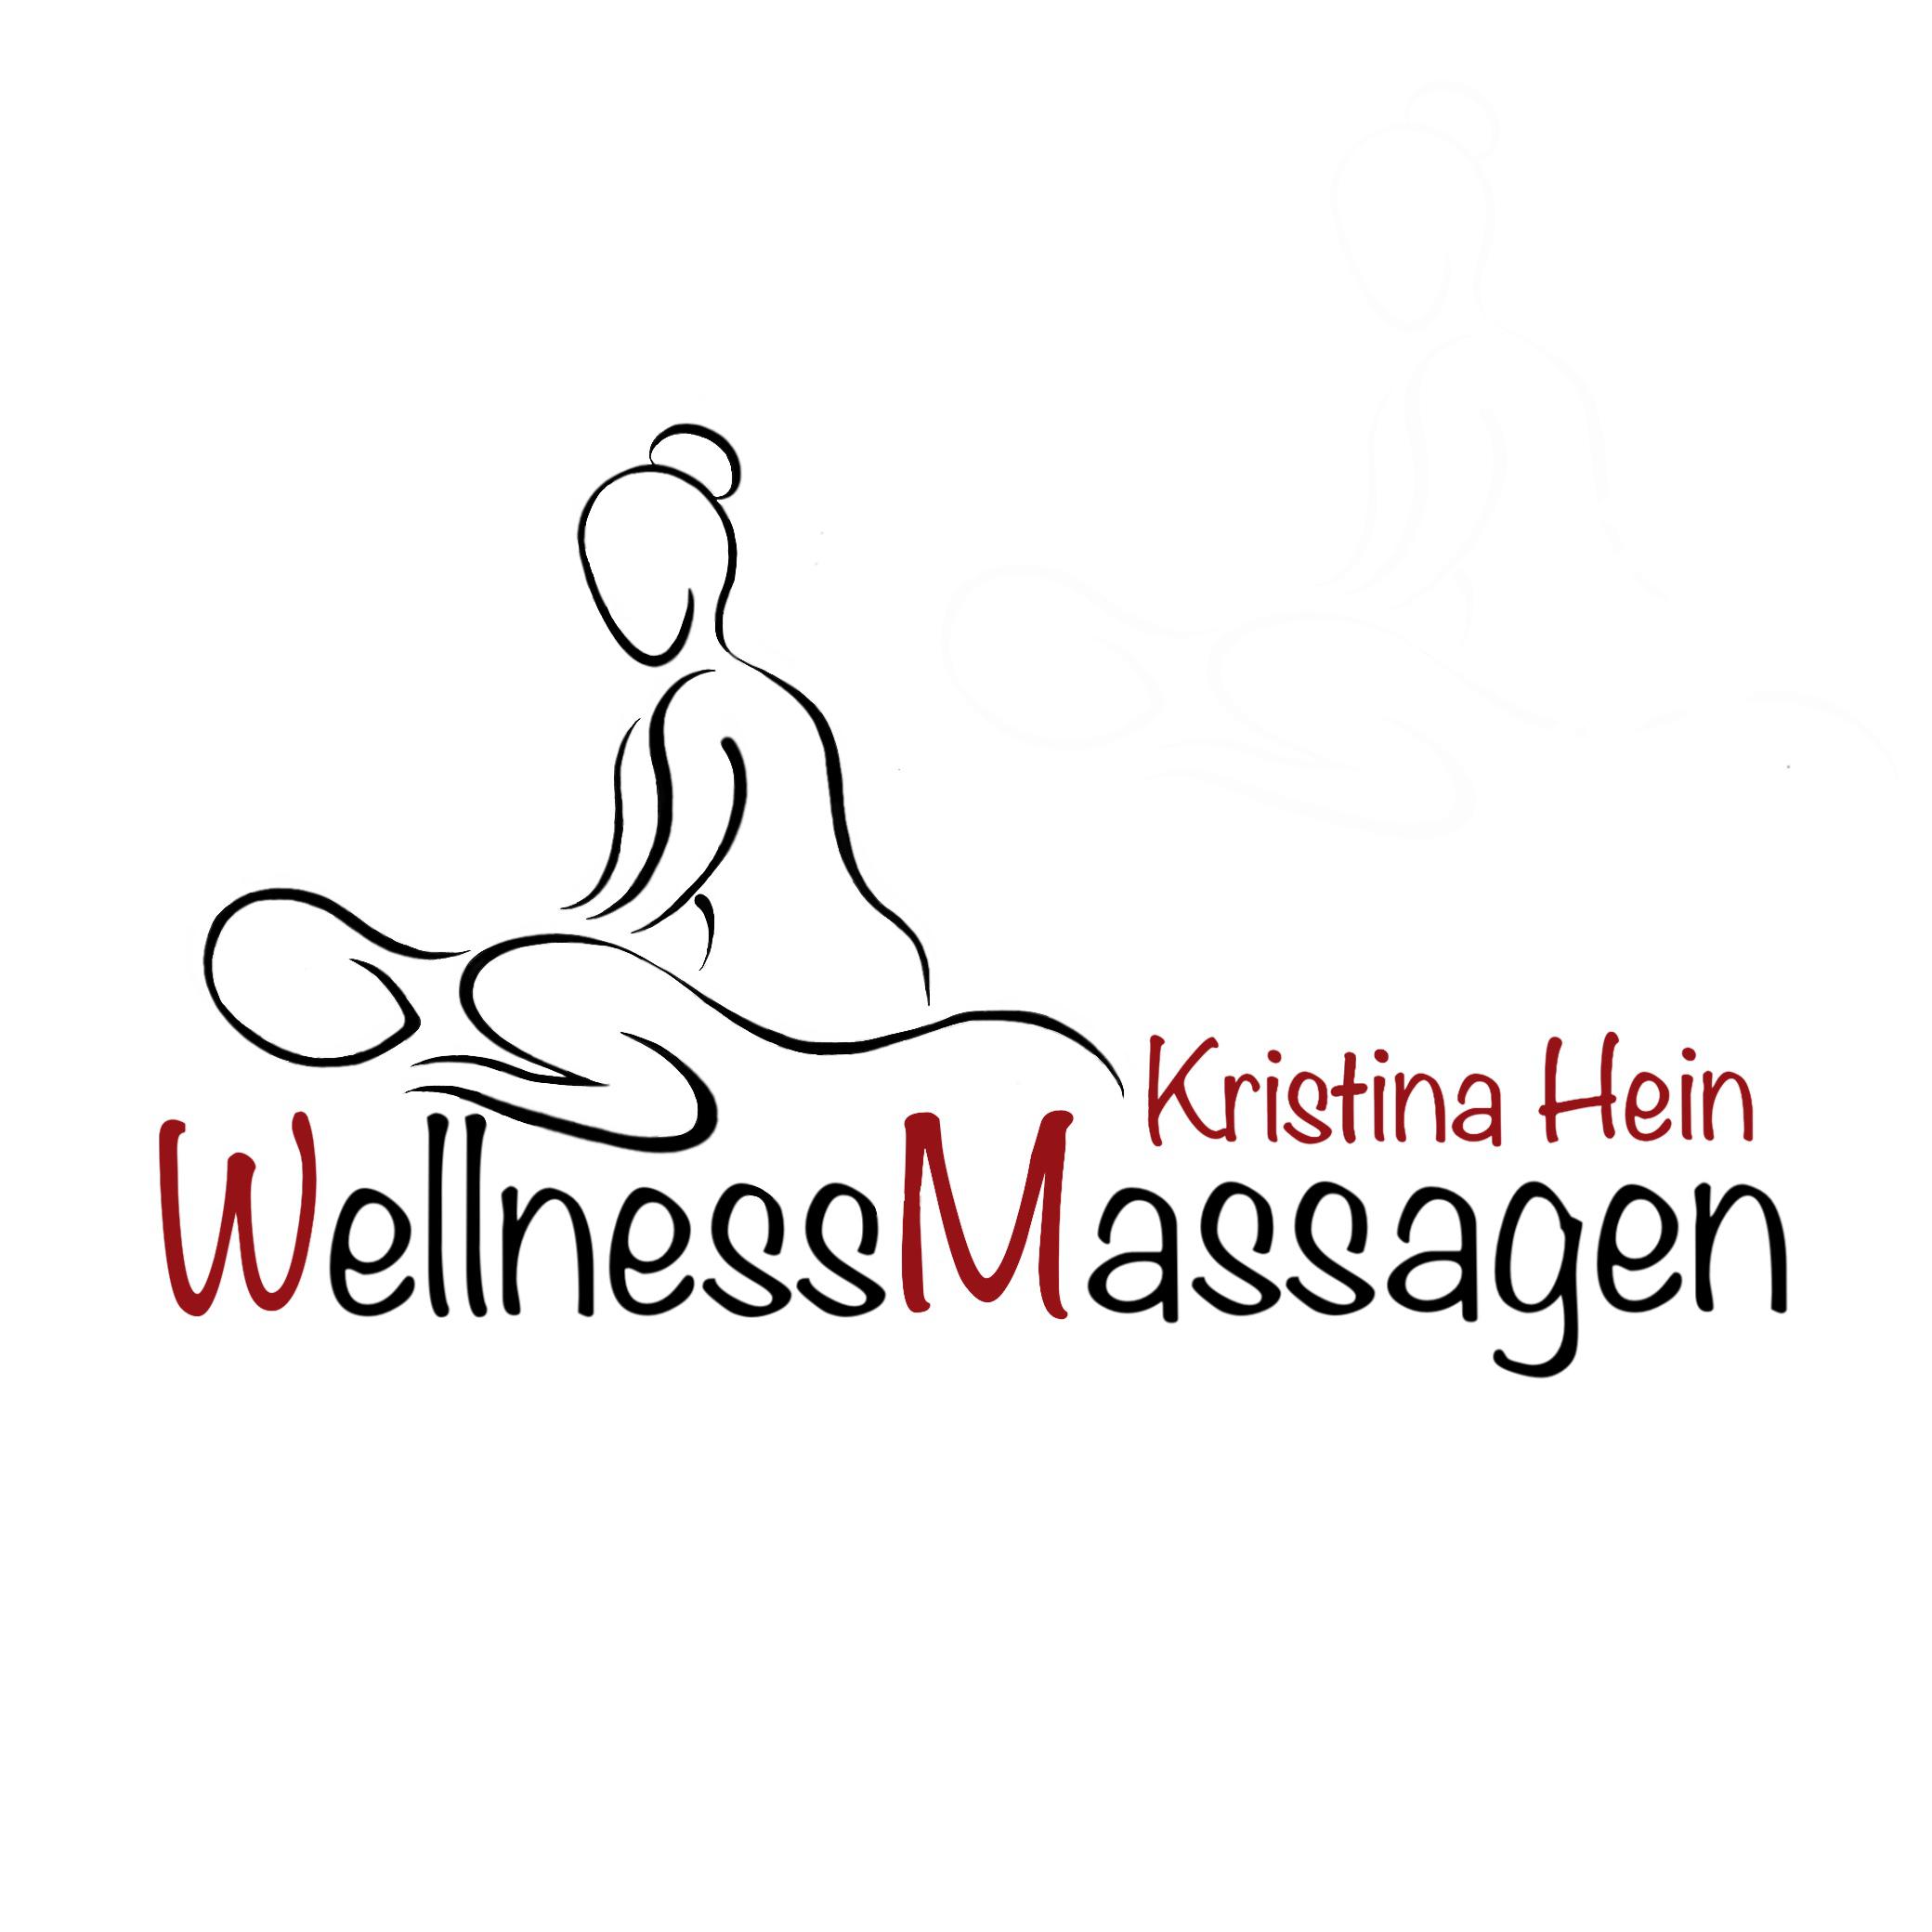 Wellnessmassagen - Kristina Hein Logo